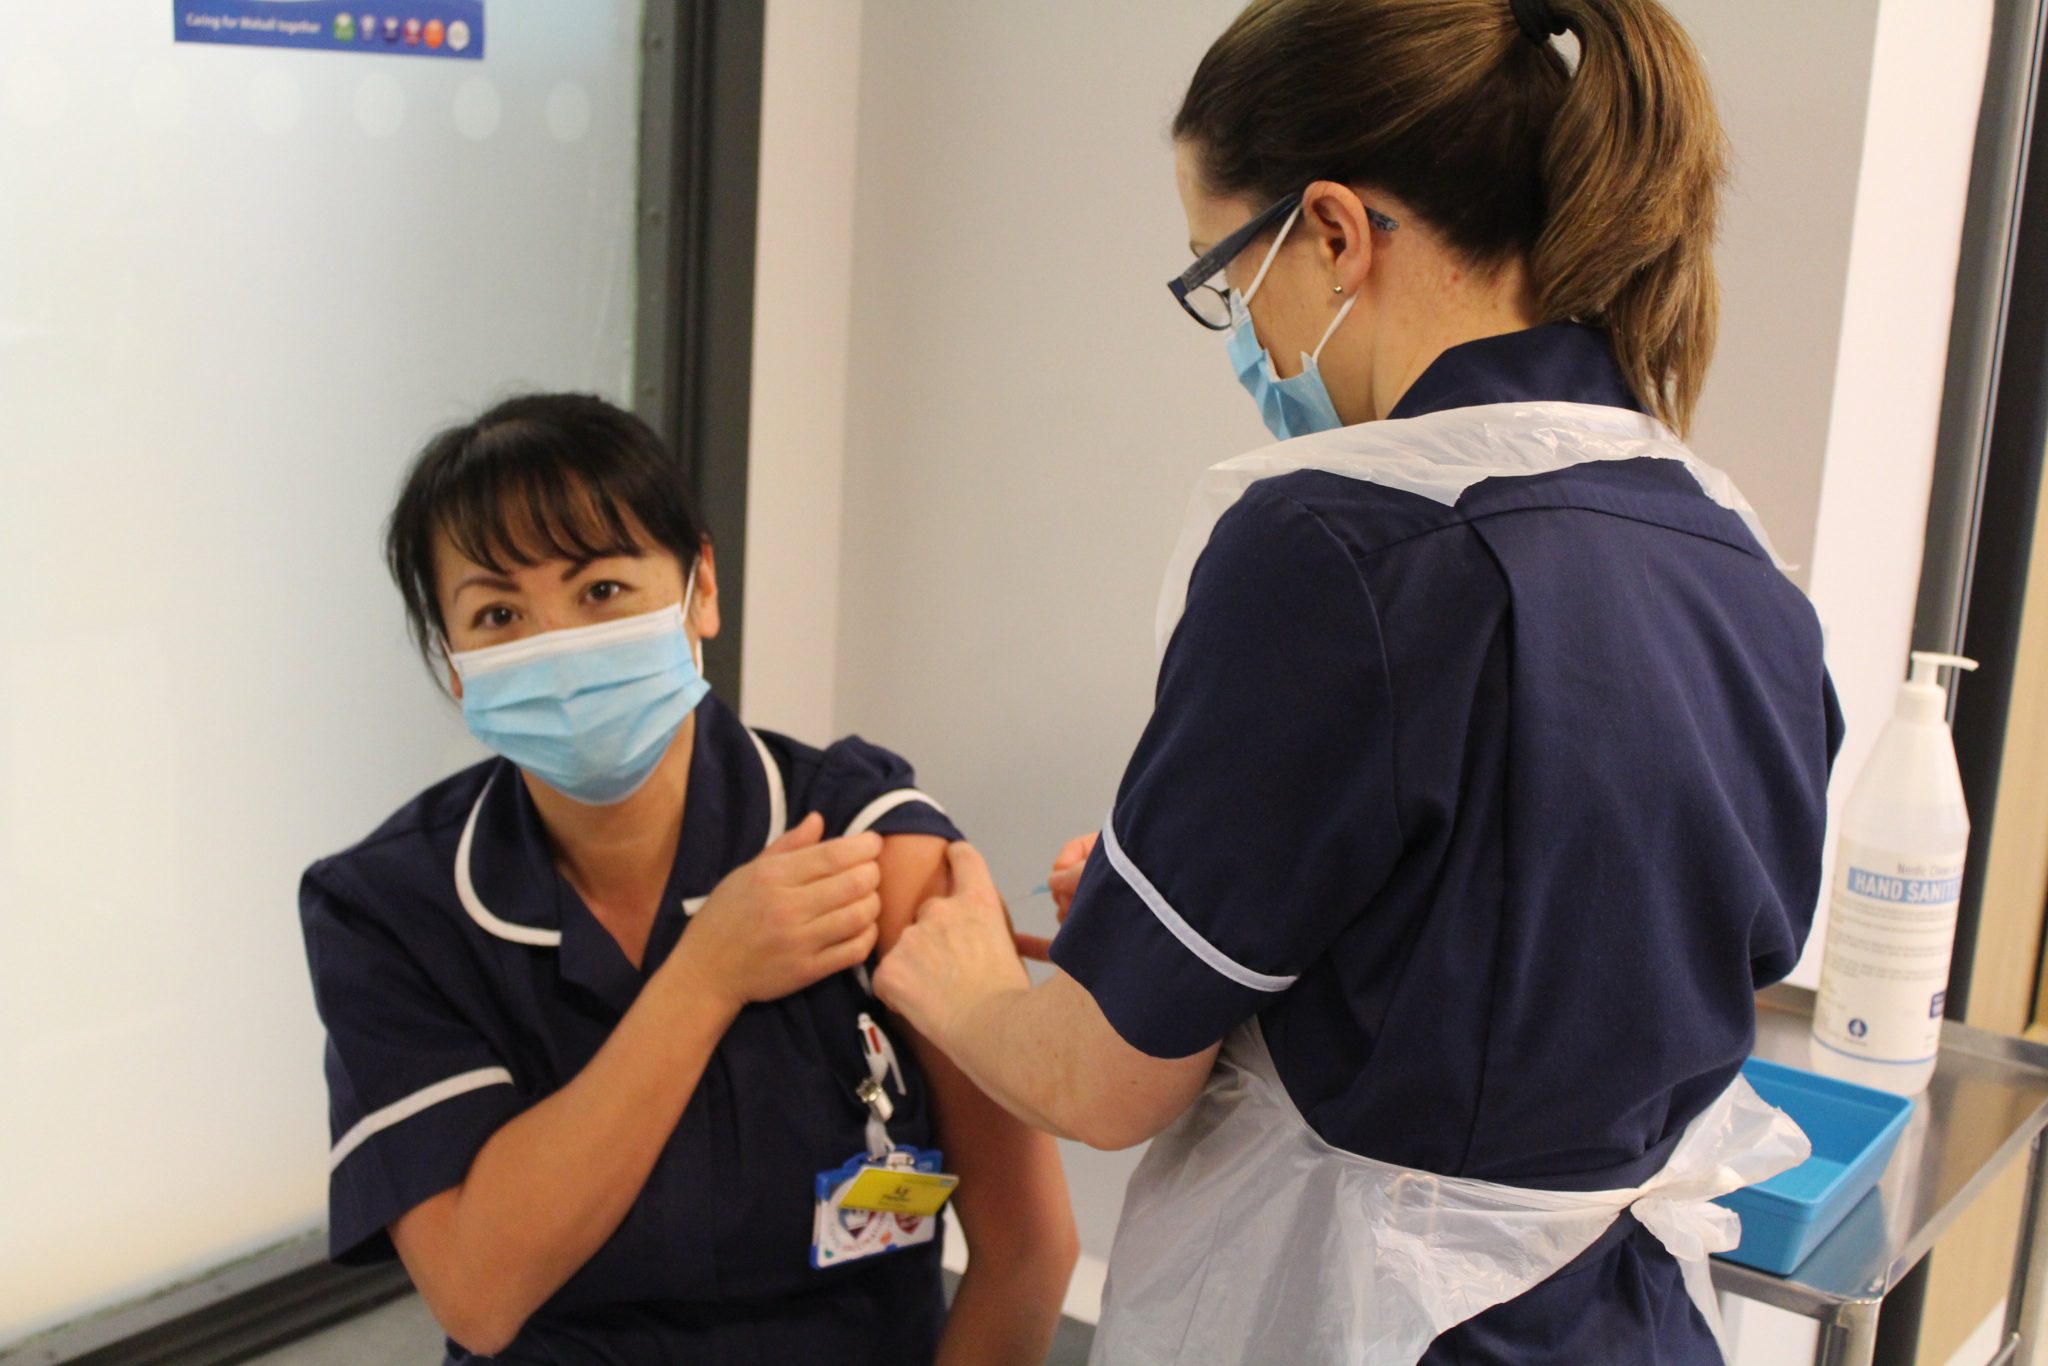 Staff receiving vaccine